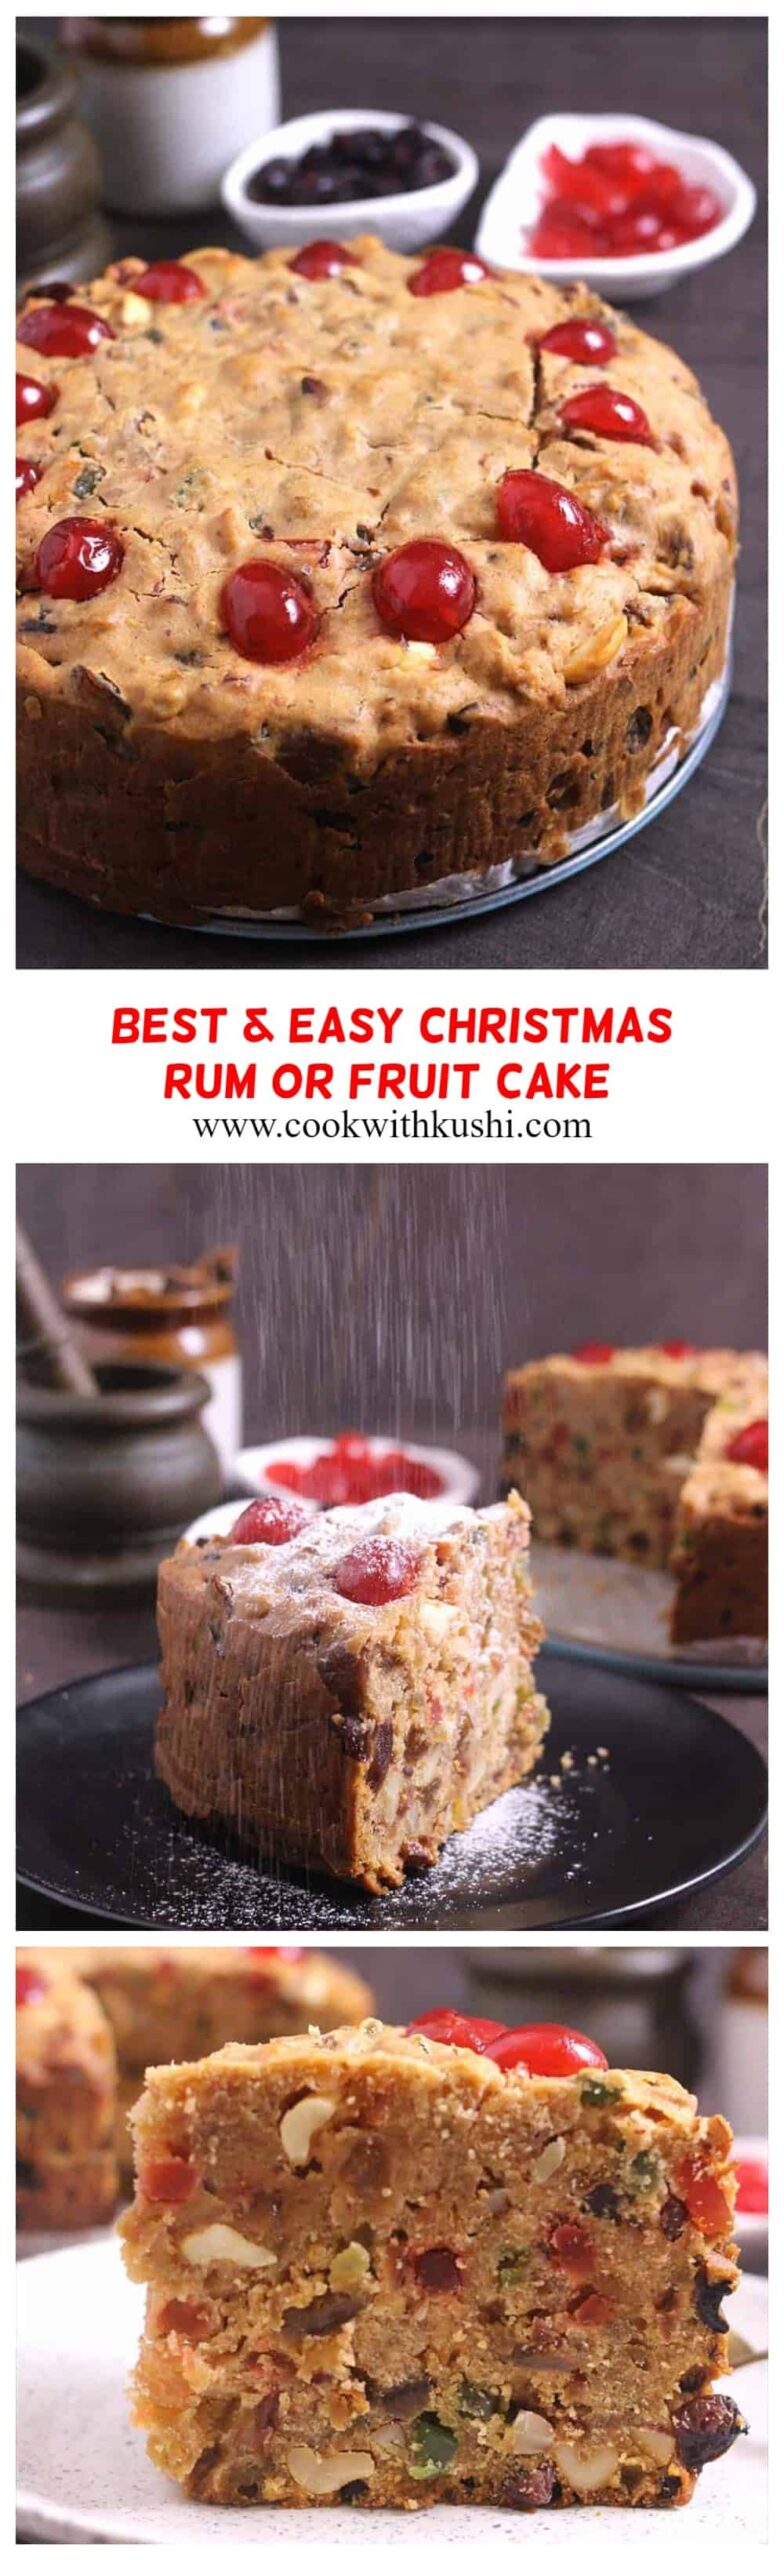 How to make best & moist Christmas rum cake or Fruit Cake